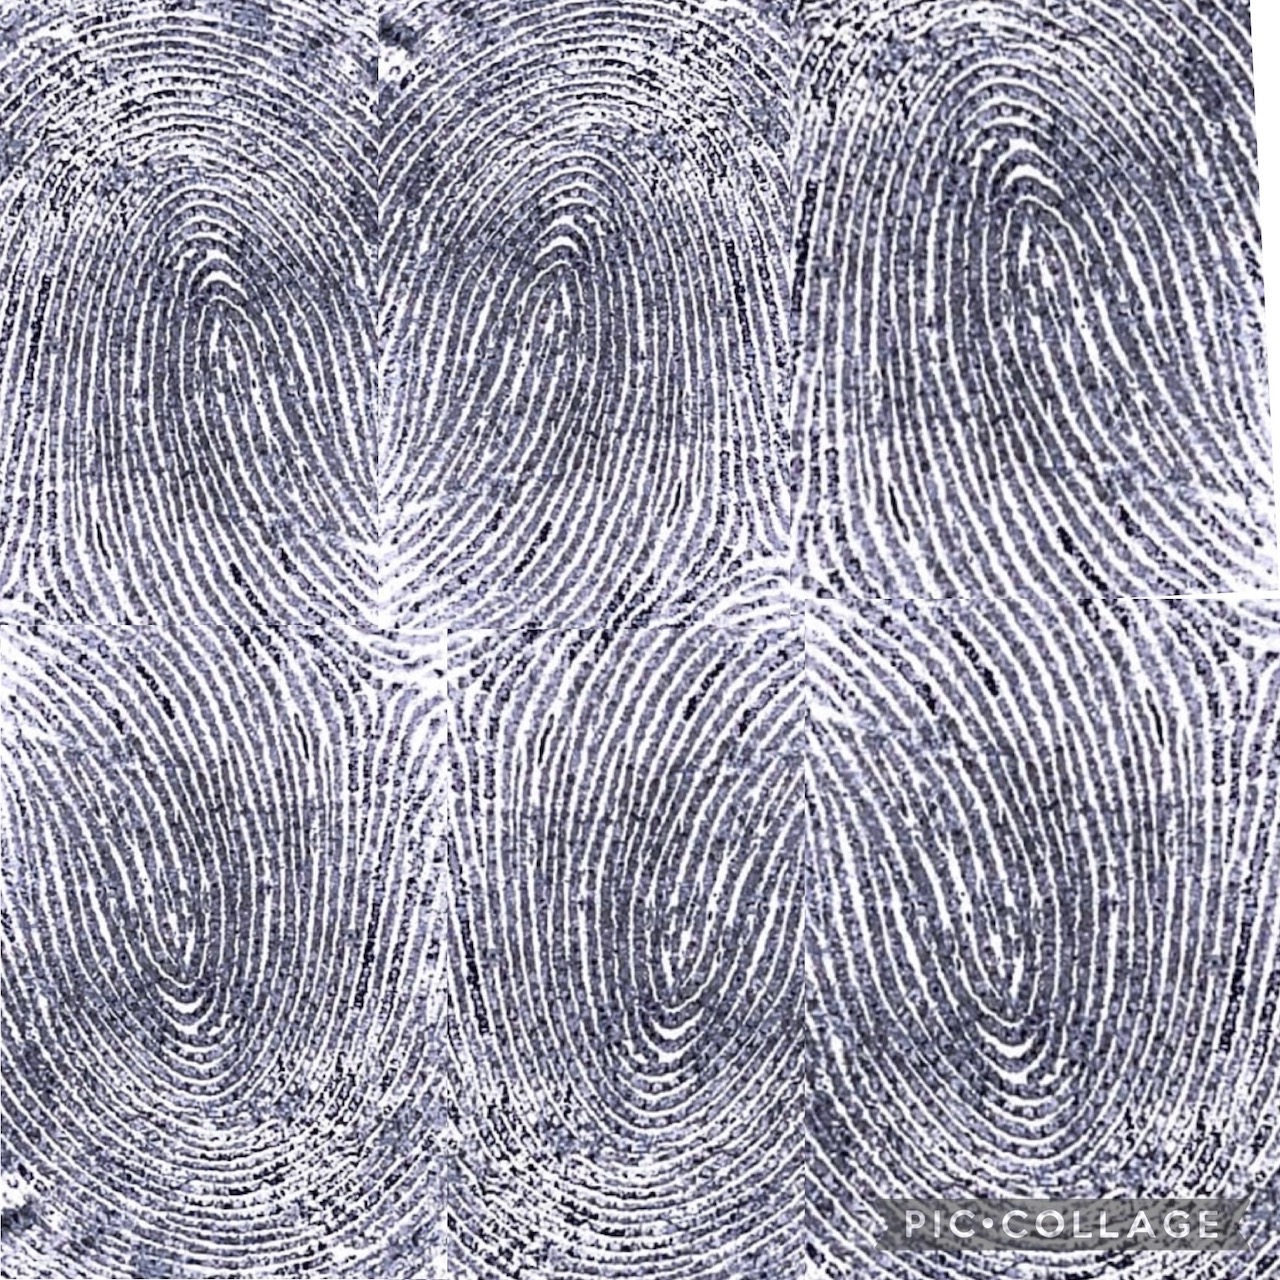 fingerprint composition